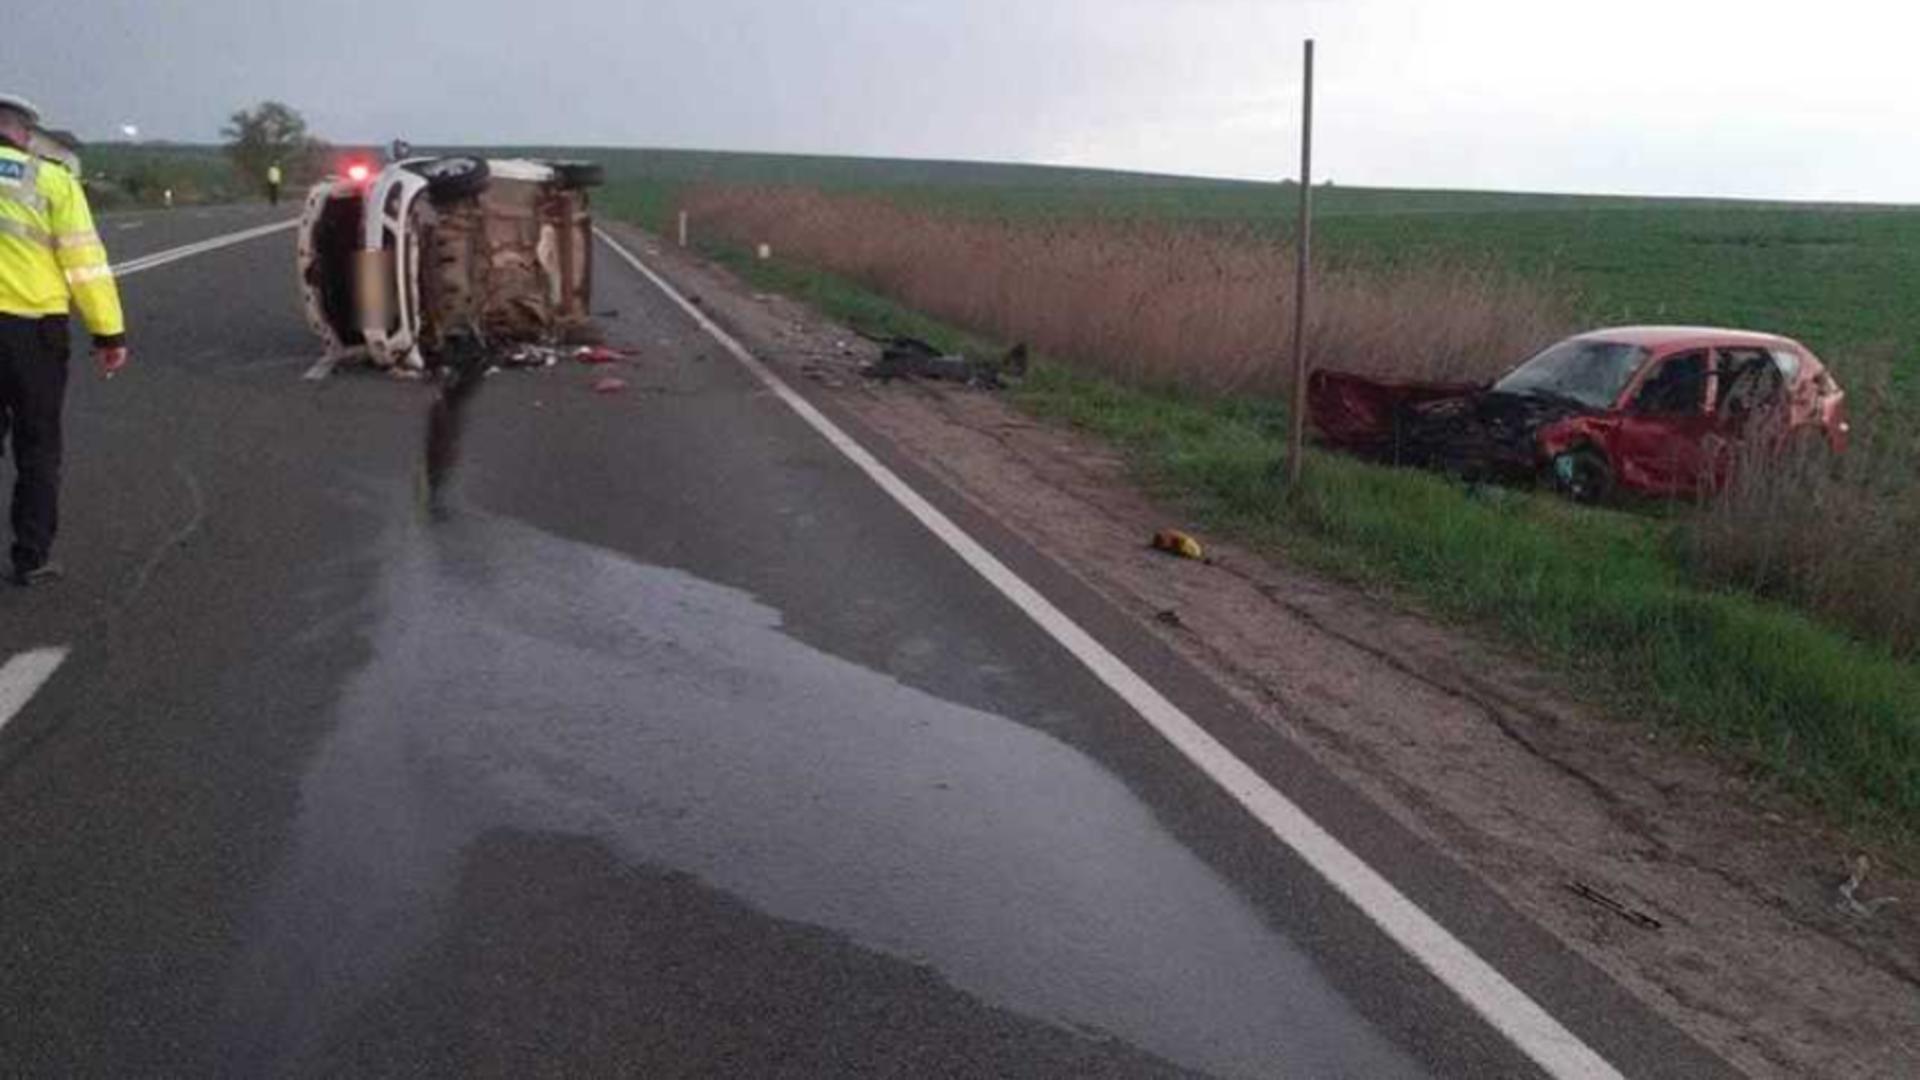 Trei persoane au fost transportate la spital, în urma accidentului. Foto/ISU Cluj